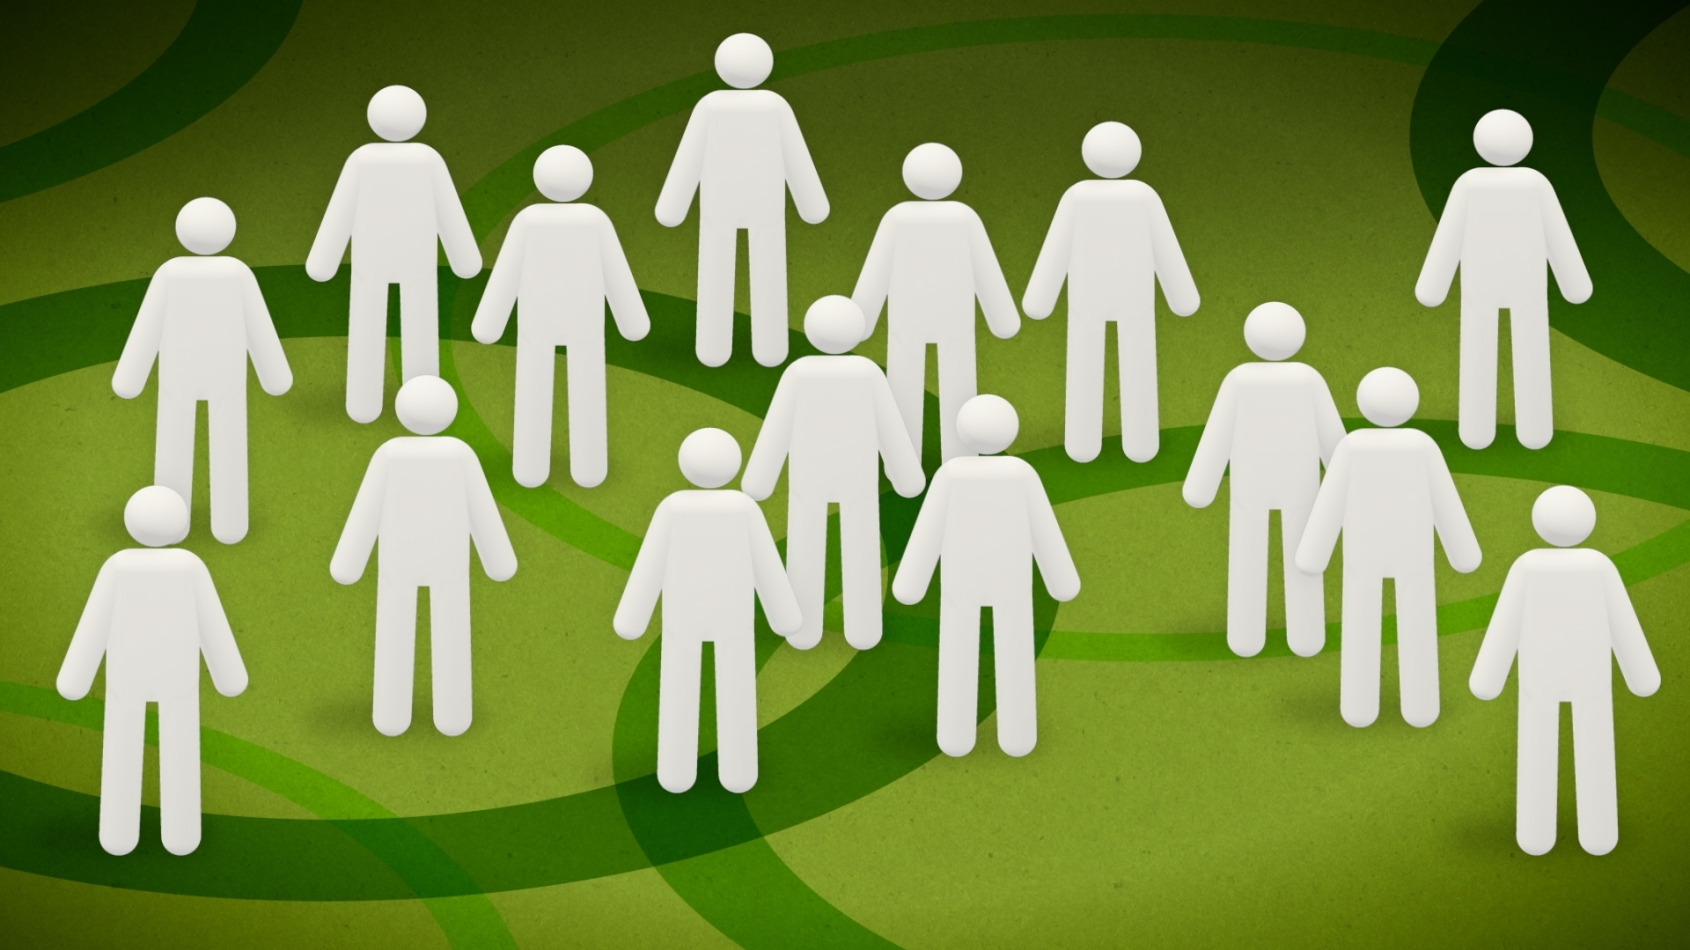 Illustratie van personen tegen een groene achtergrond met groene cirkels